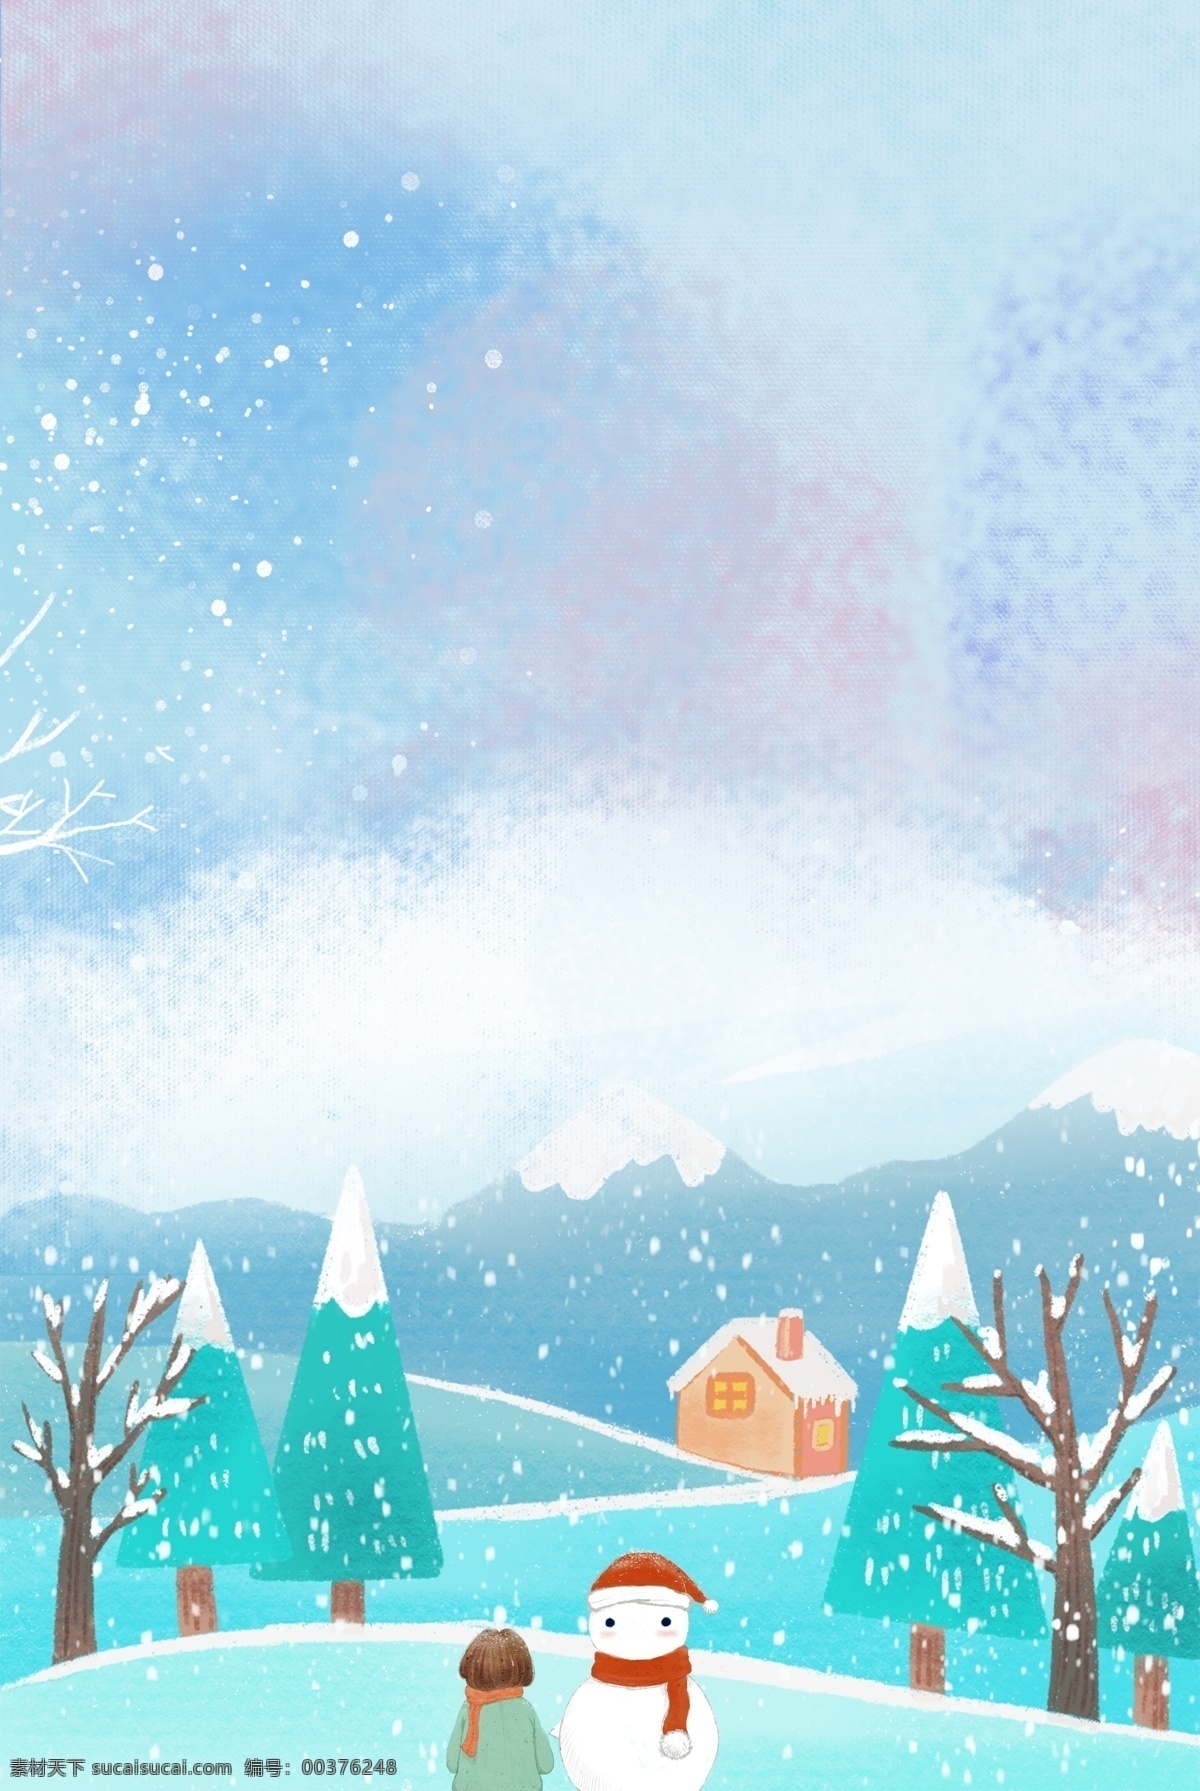 创意 雪景 自然风景 合成 背景 风景 下雪 树木 雪人 房屋 简约 卡通